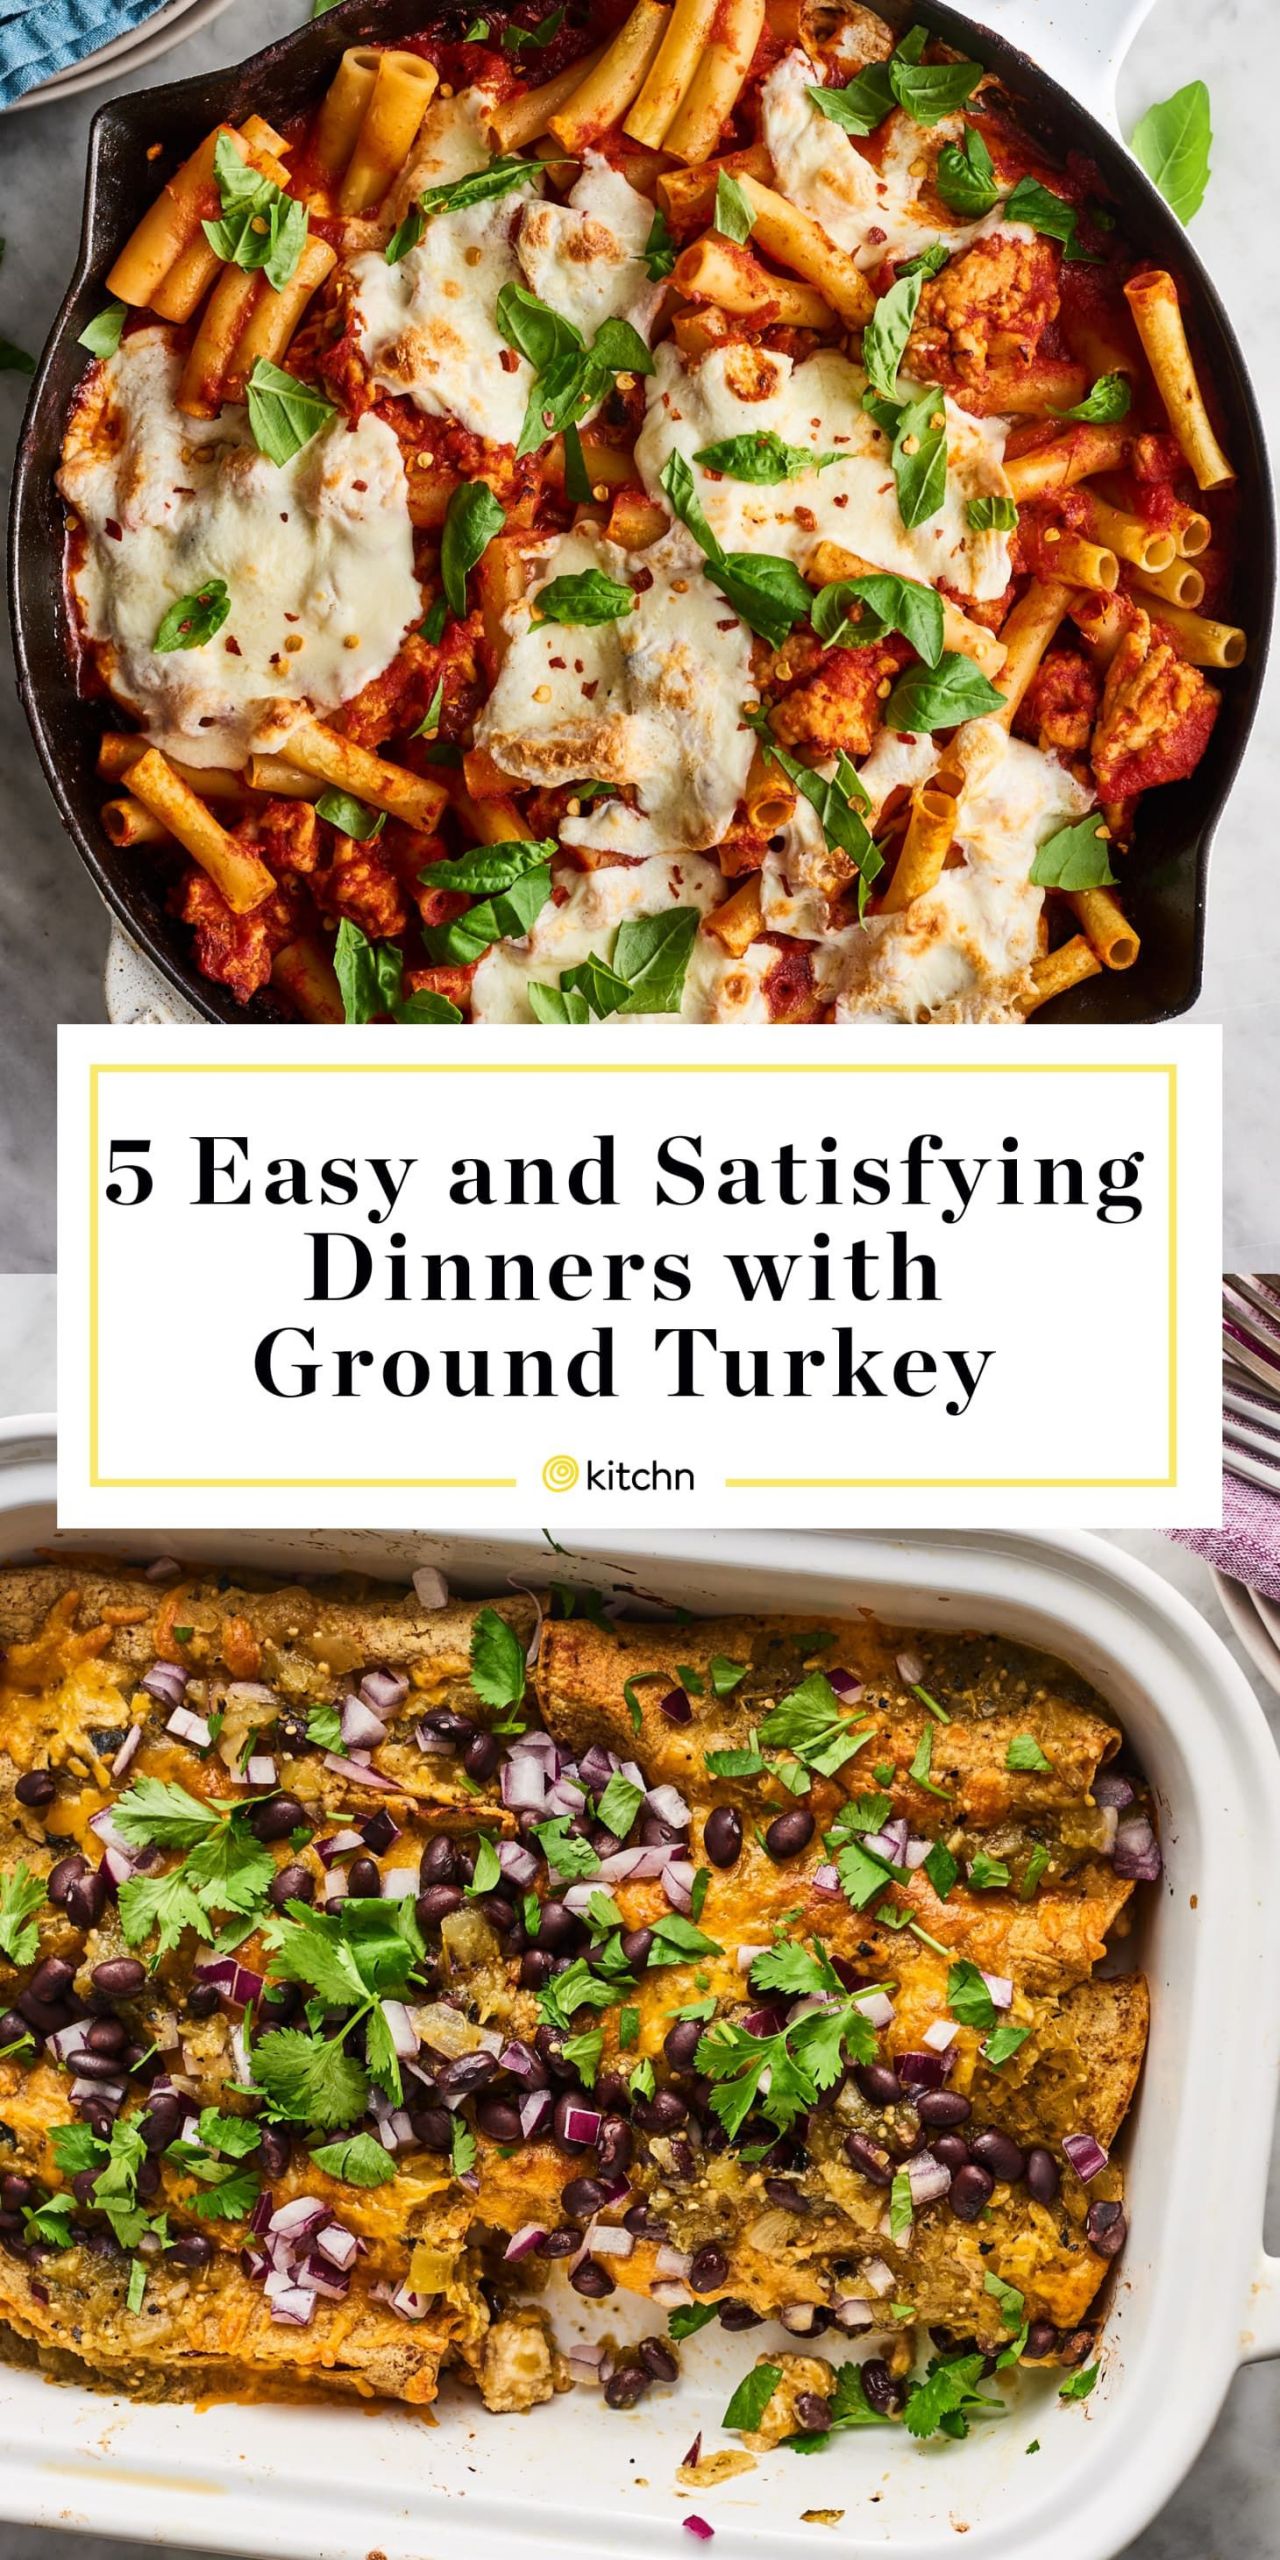 Quick Dinner Ideas With Ground Turkey
 5 Quick Dinners That Start with a Pound of Ground Turkey